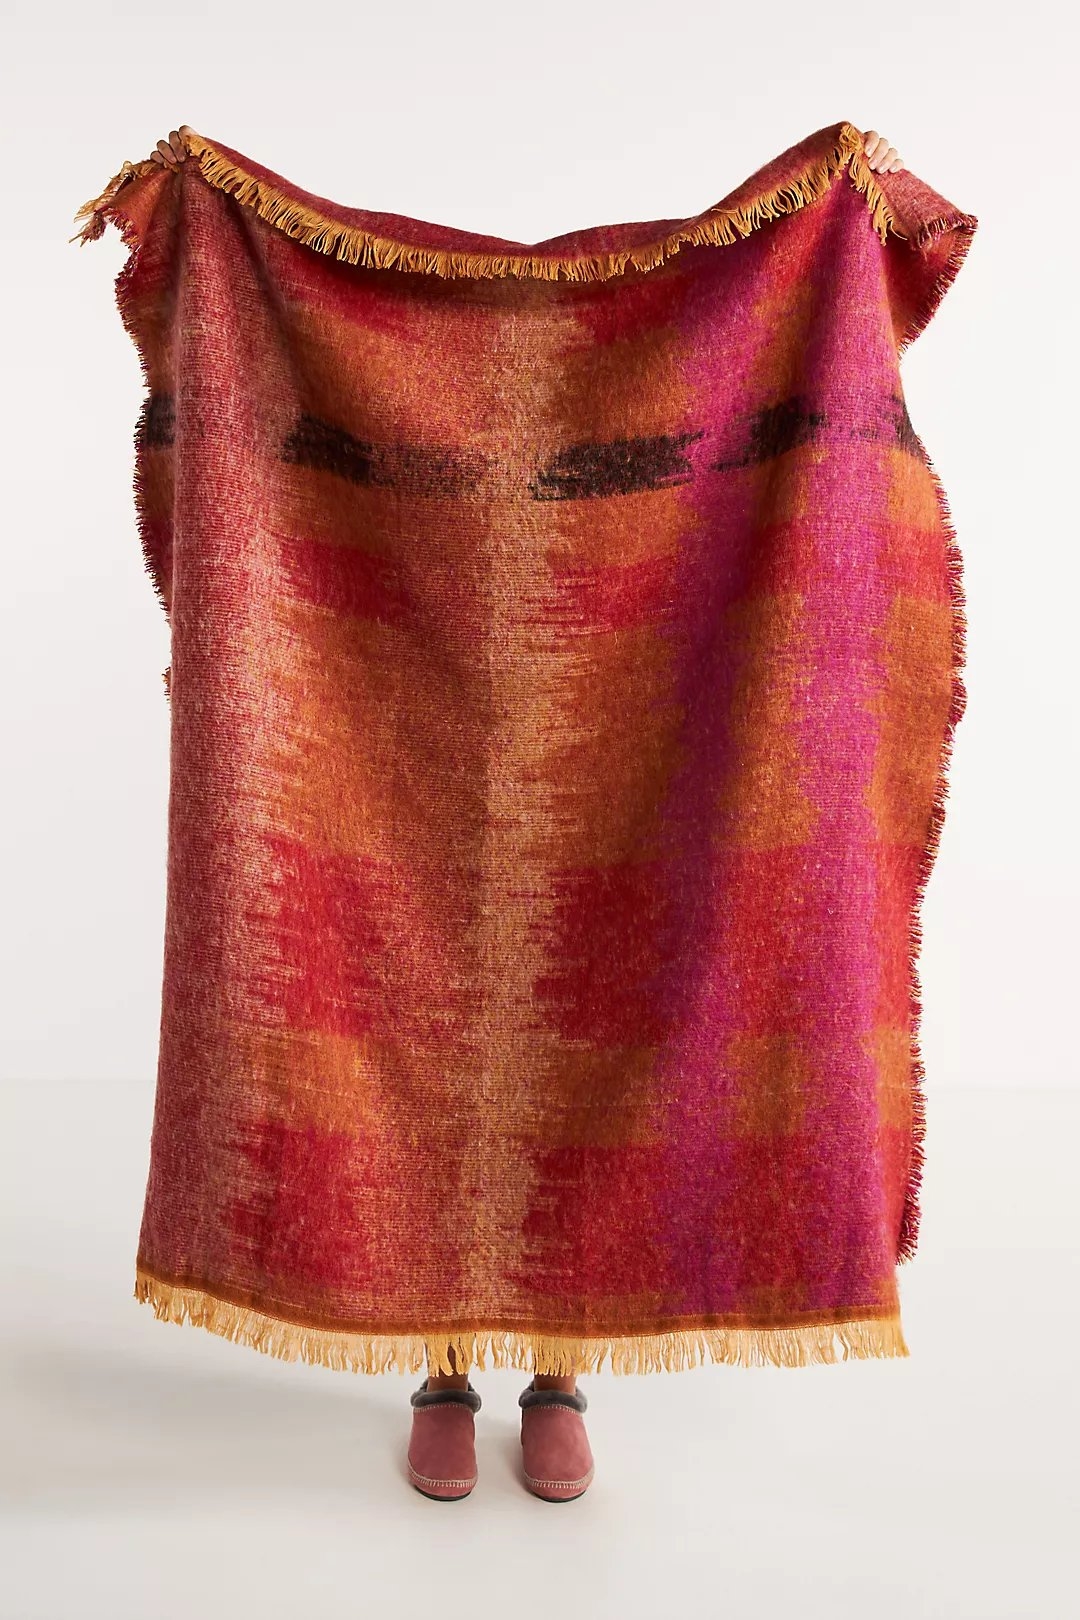 Woven Taina Throw Blanket - Image 0